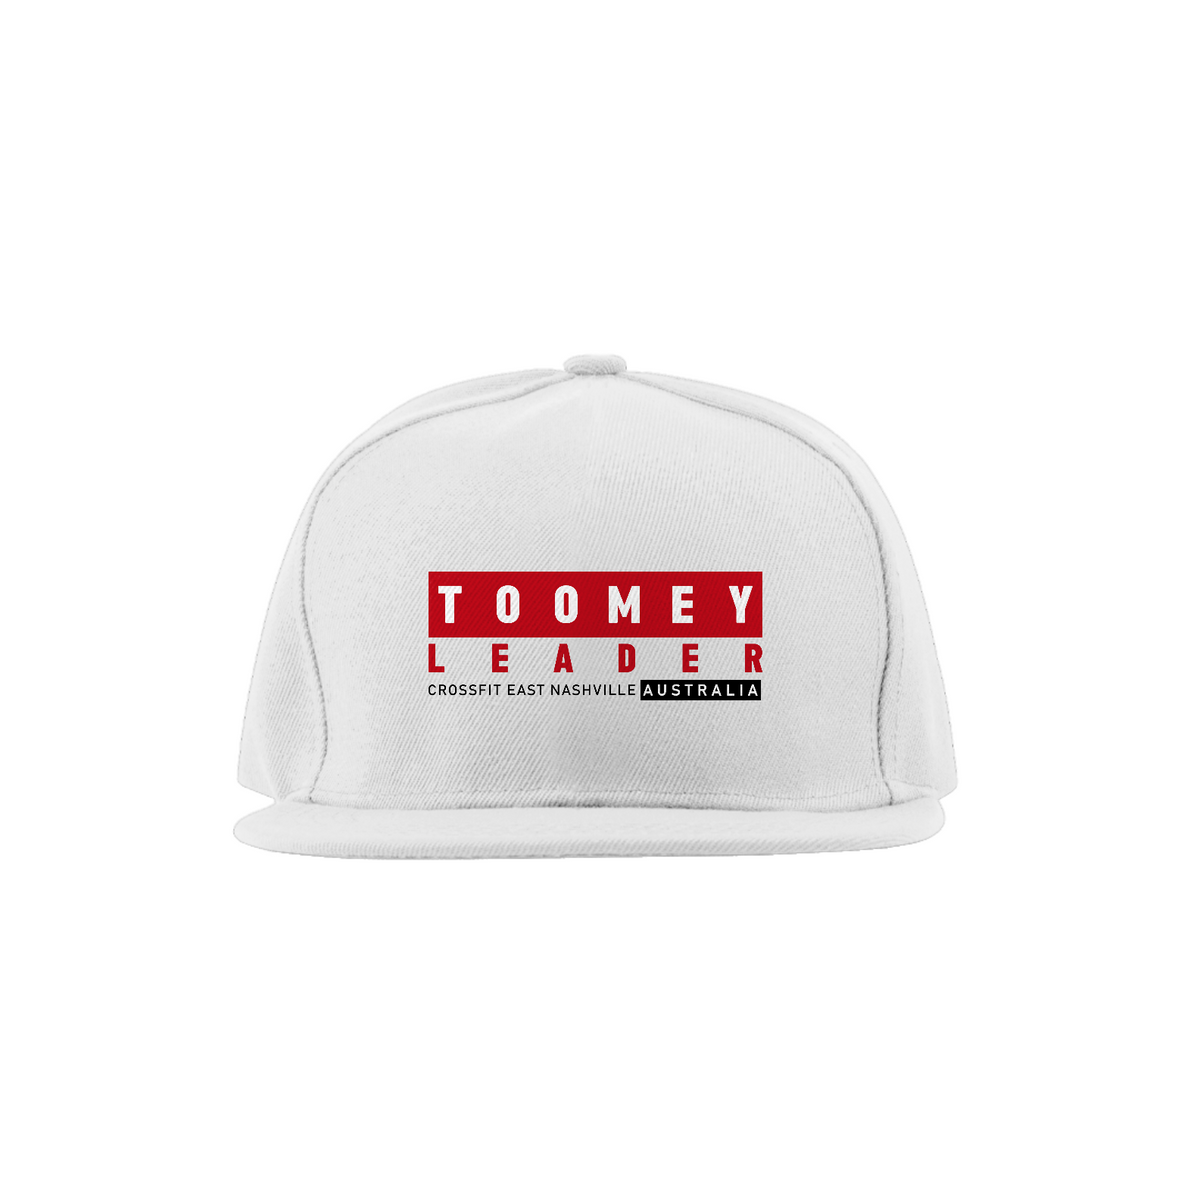 Nome do produto: Toomey LEADER